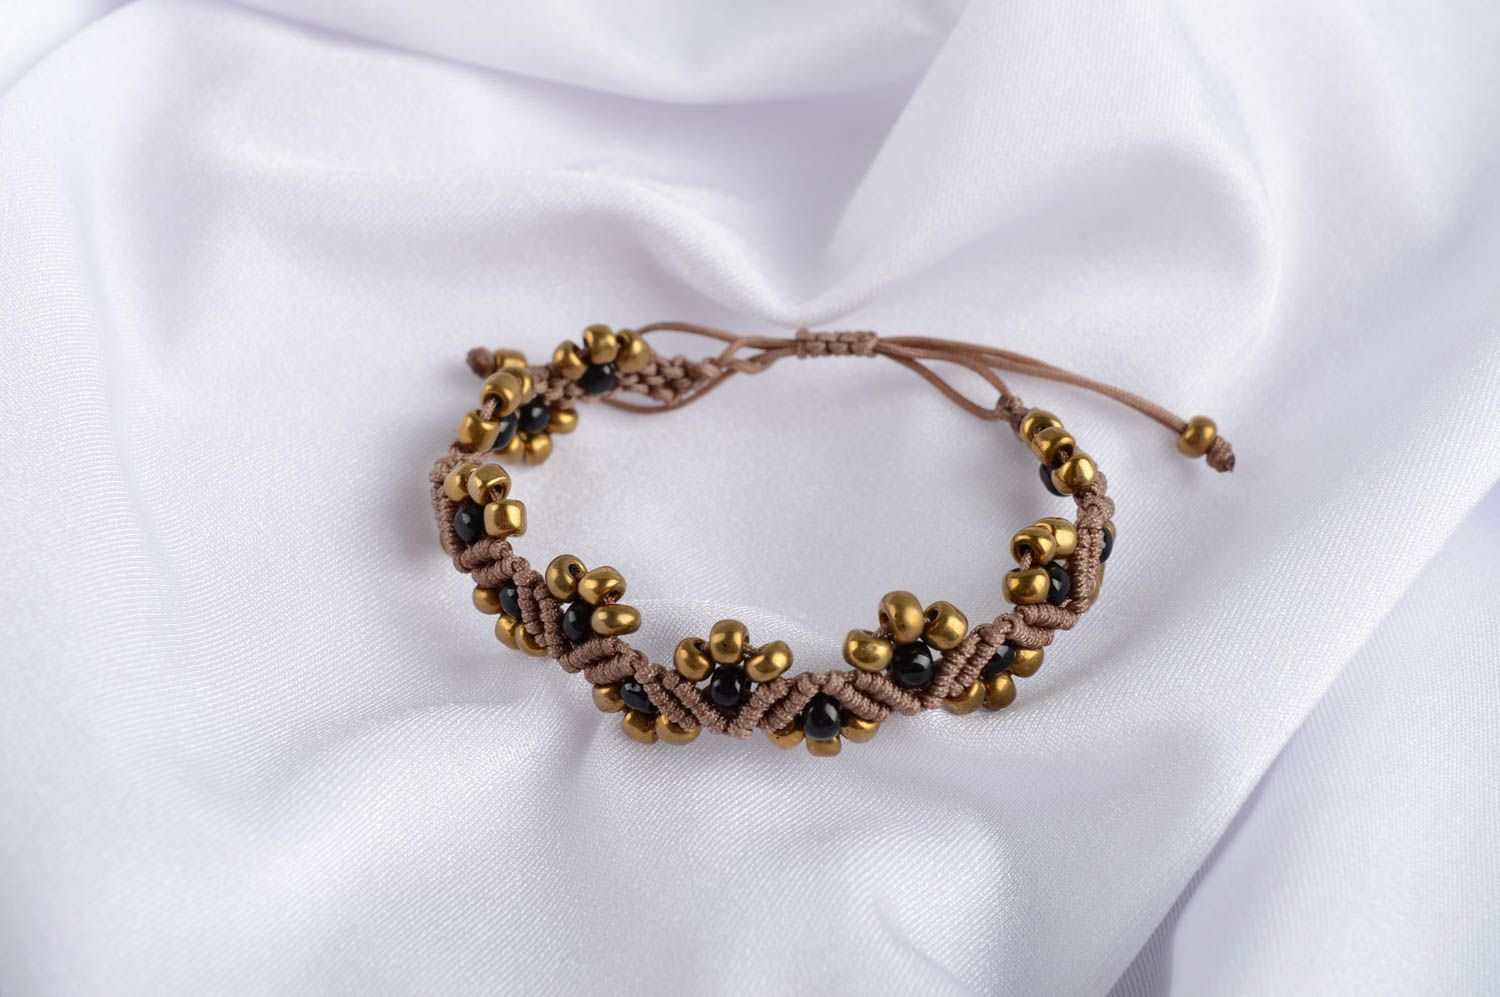 Handmade bracelet designer bracelet beaded bracelet beads jewelry gift for girl photo 1